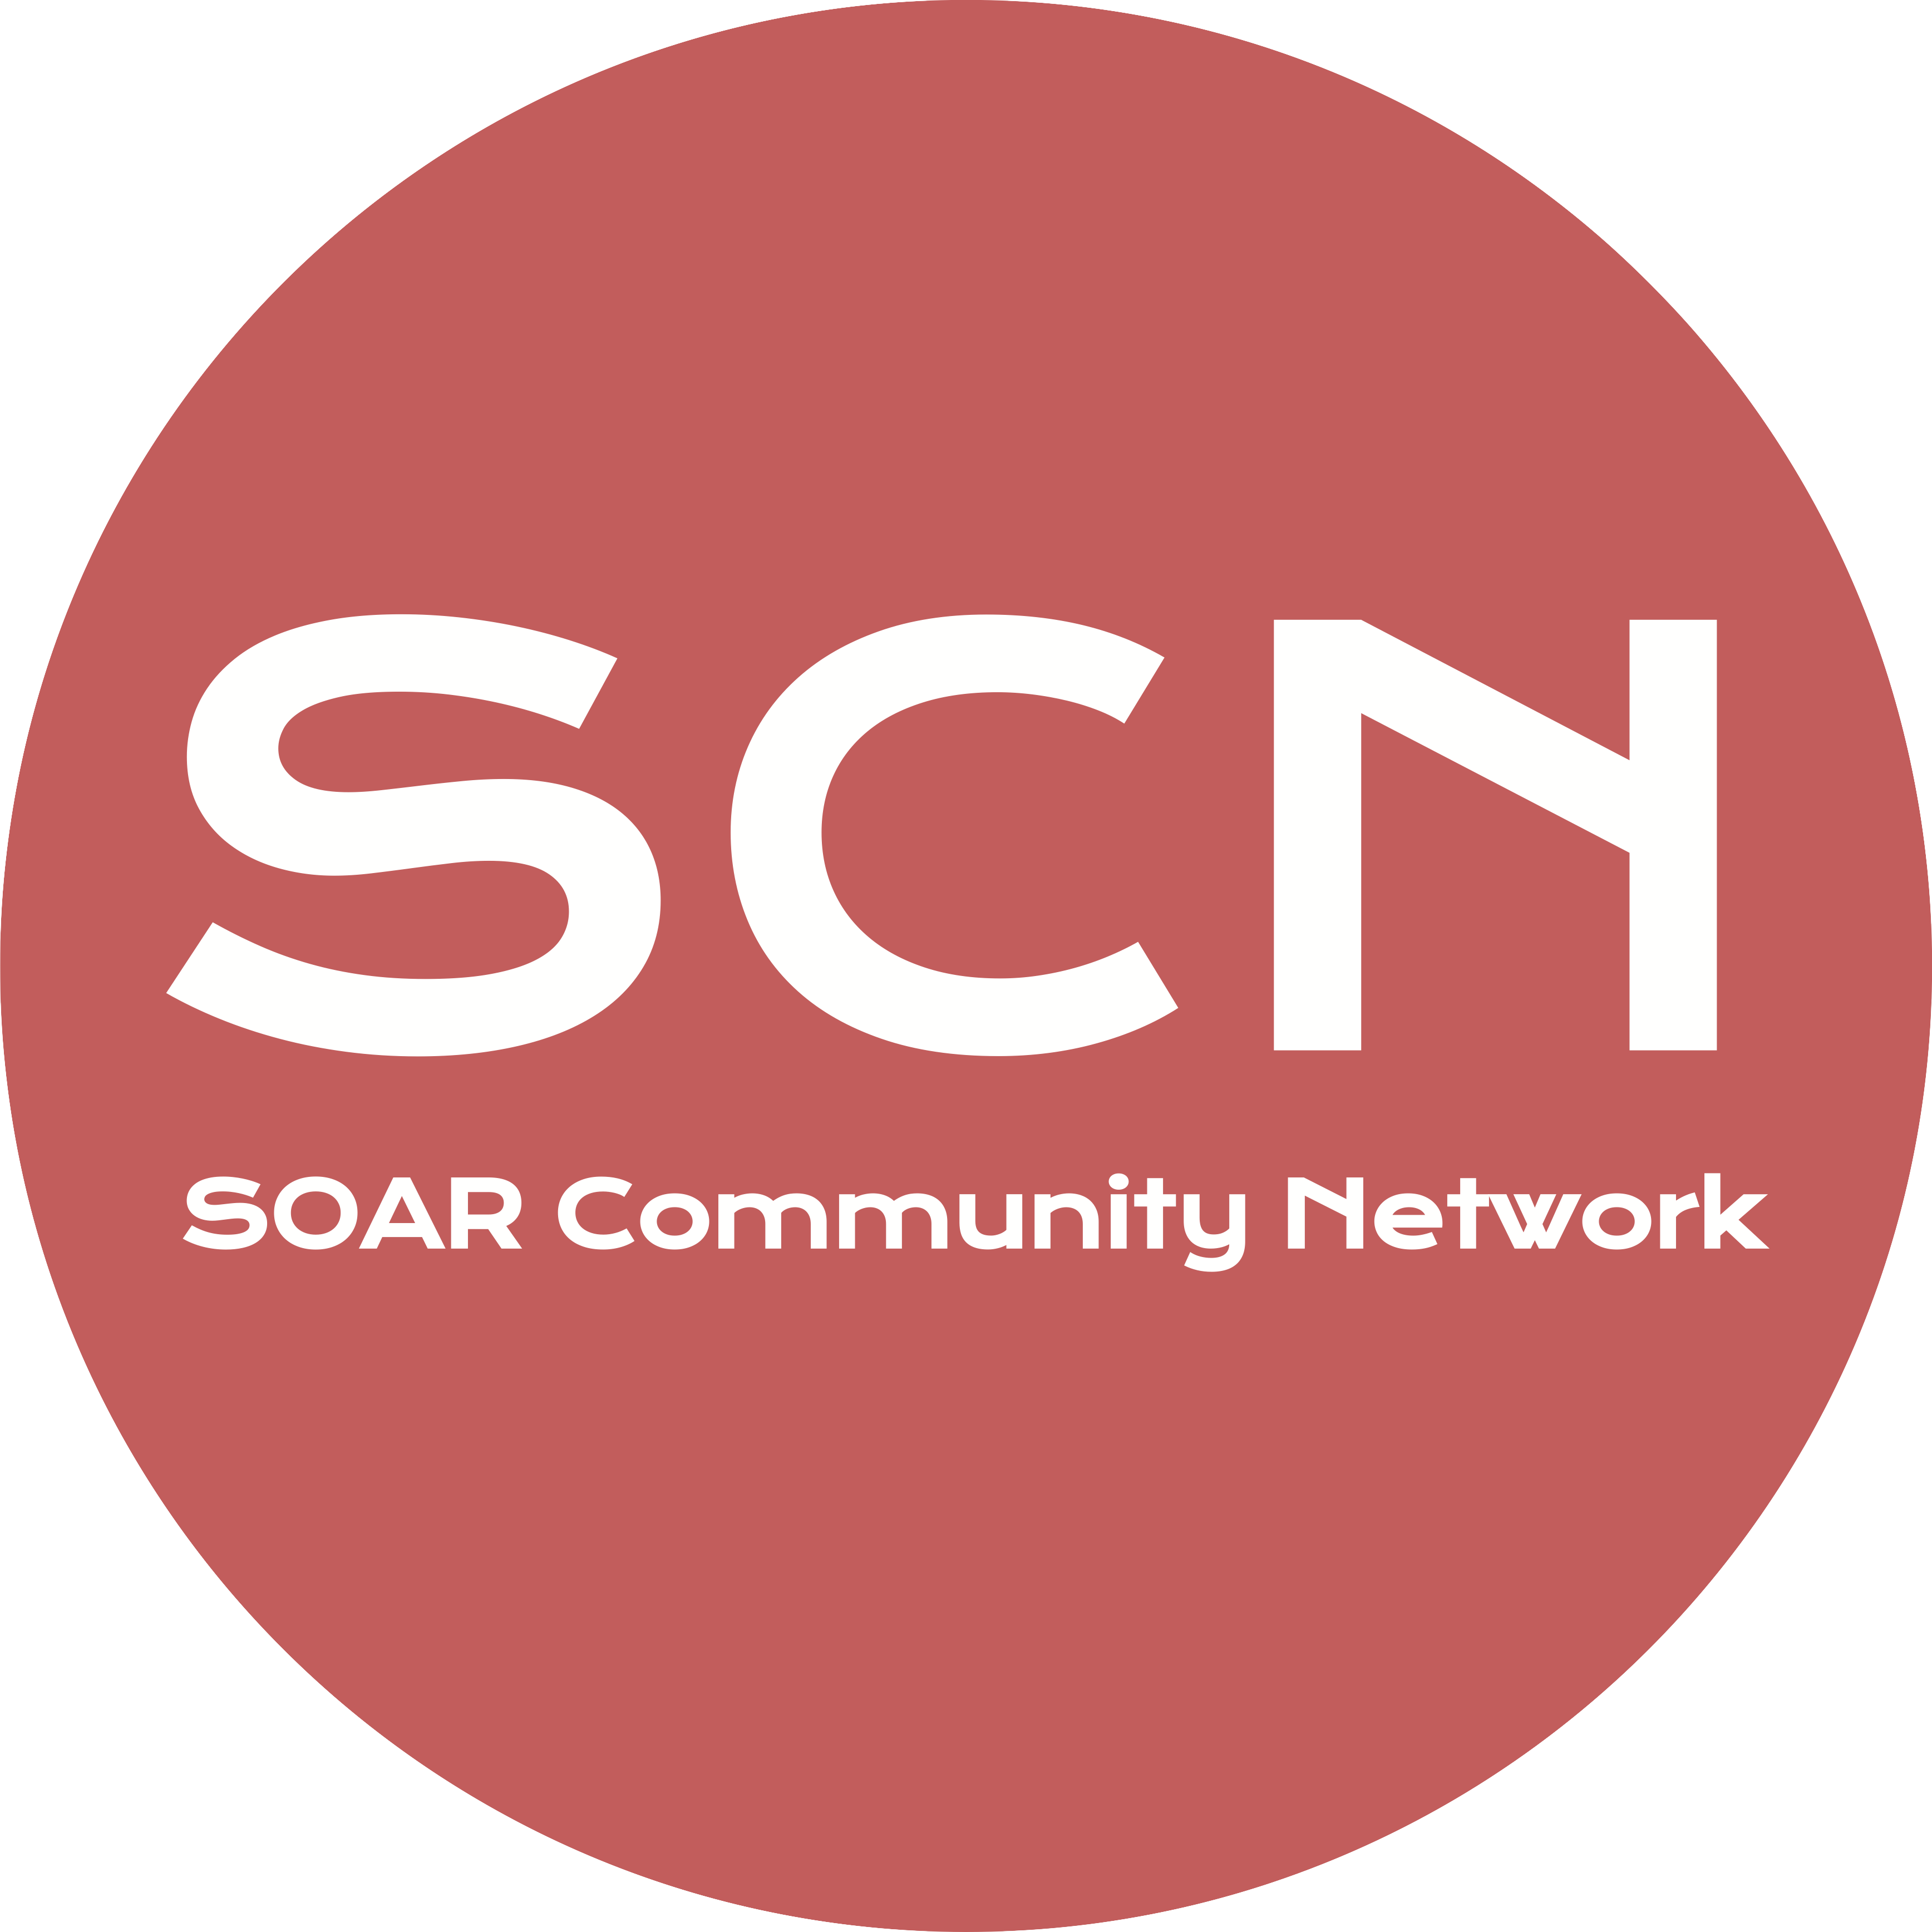 SOAR Community Network